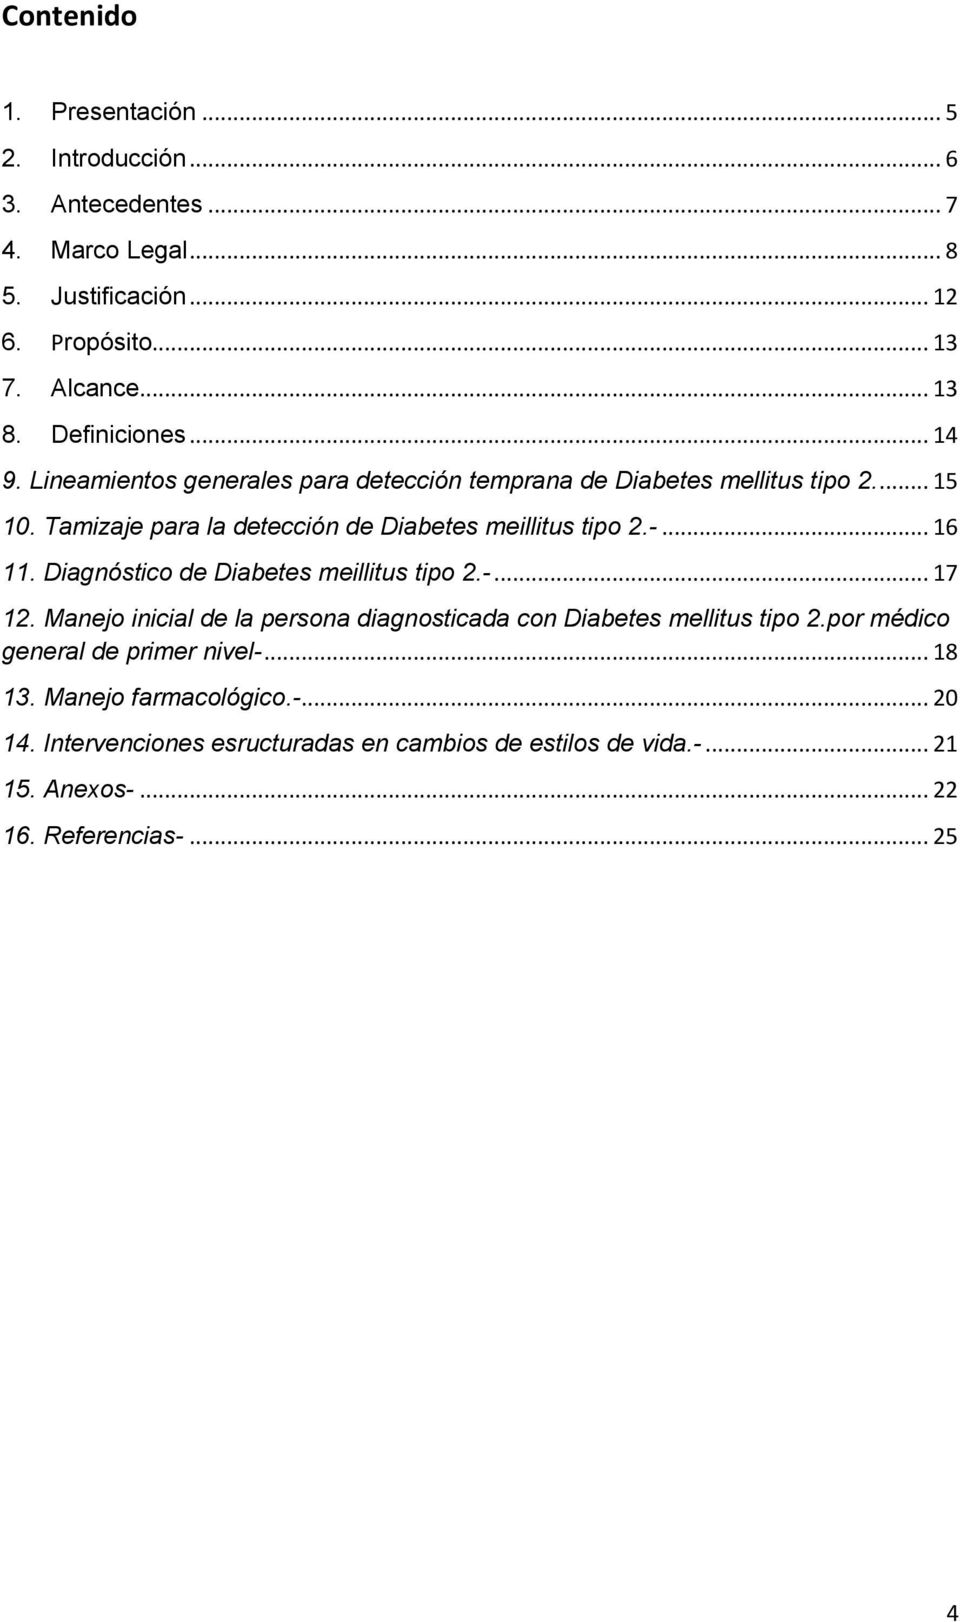 Tamizaje para la detección de Diabetes meillitus tipo 2.-... 16 11. Diagnóstico de Diabetes meillitus tipo 2.-... 17 12.